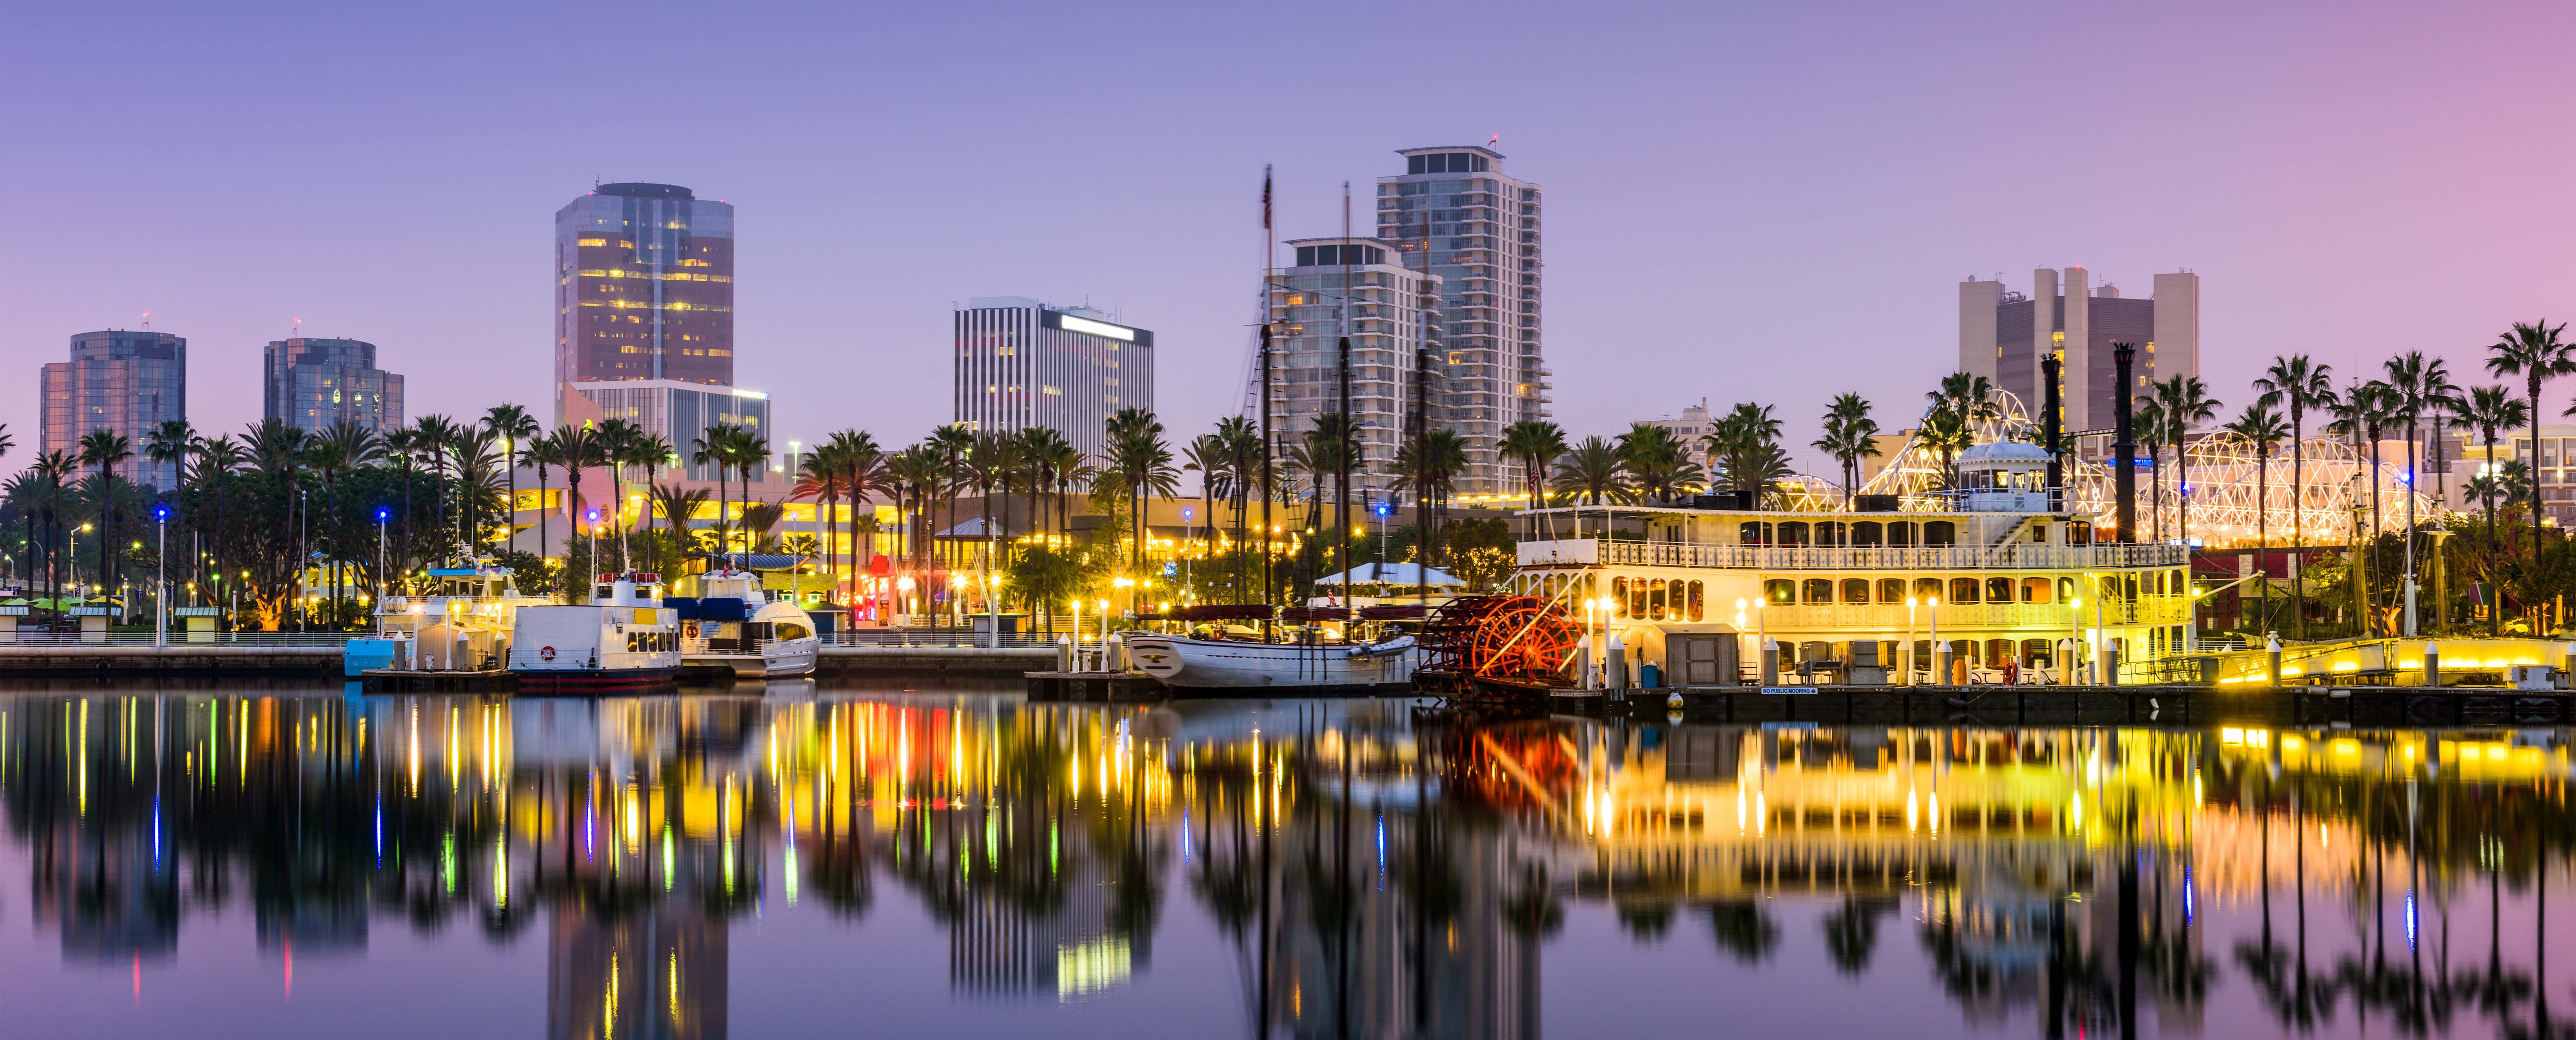 Long Beach, CA skyline at dusk